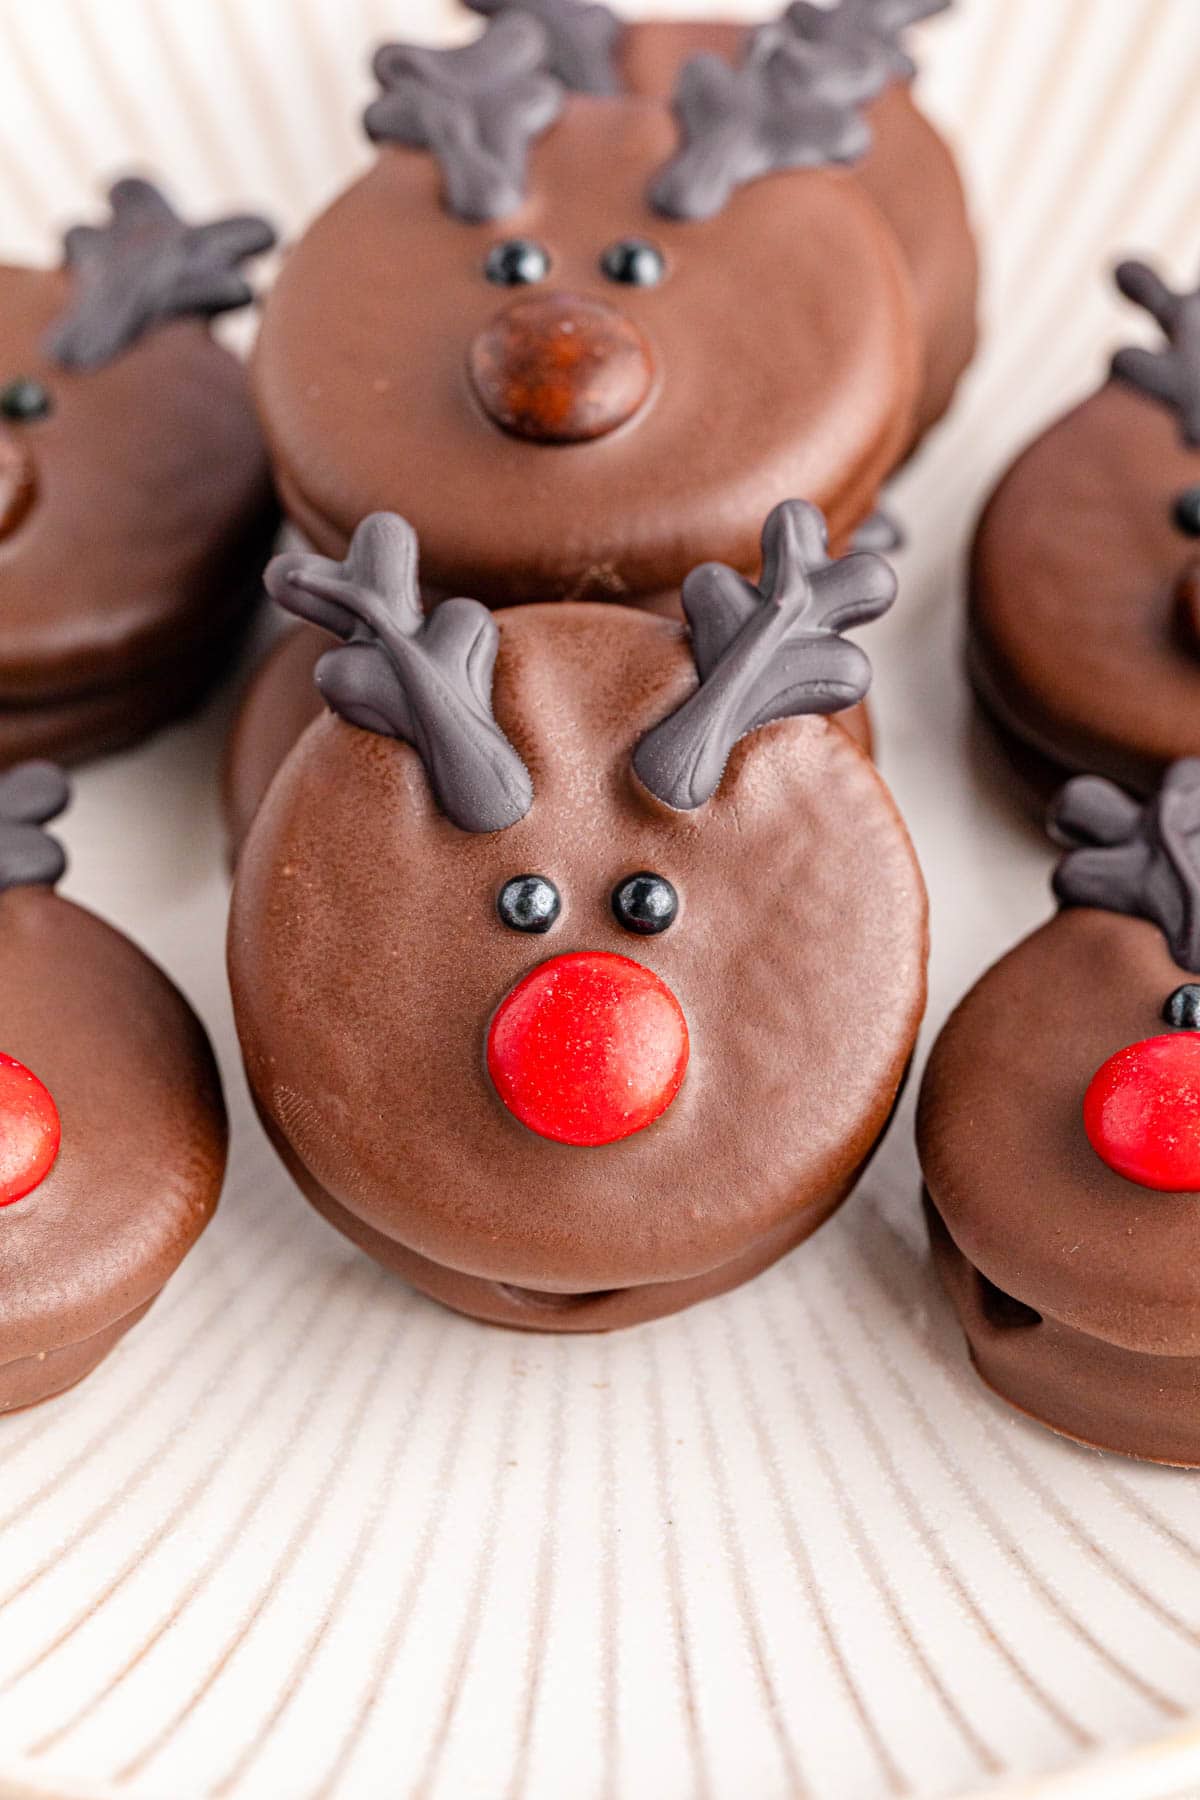 Chocolate reindeer cookies on a plate.